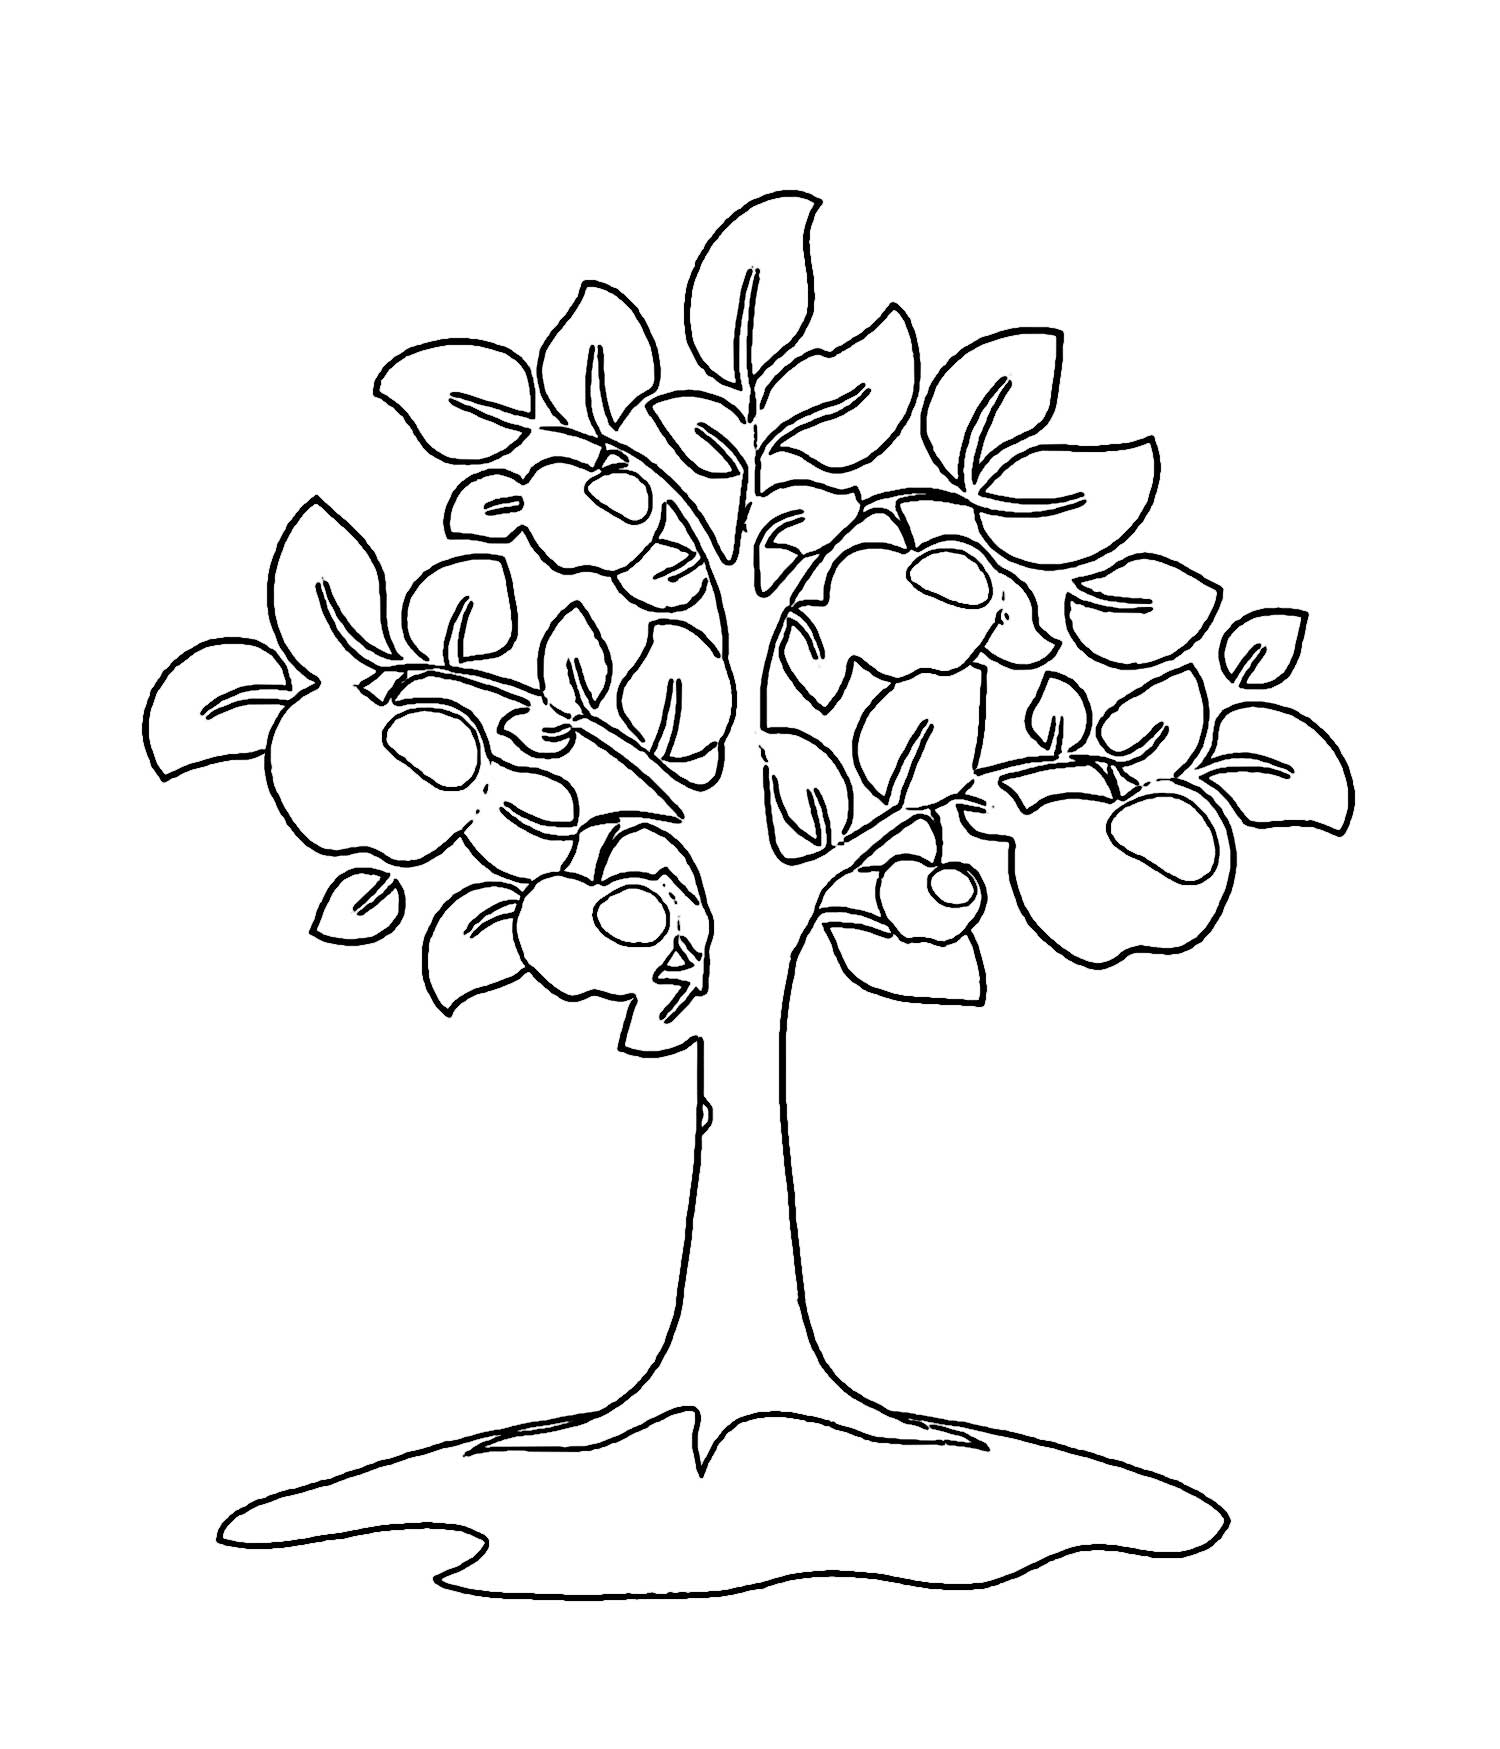 Stencil apple tree